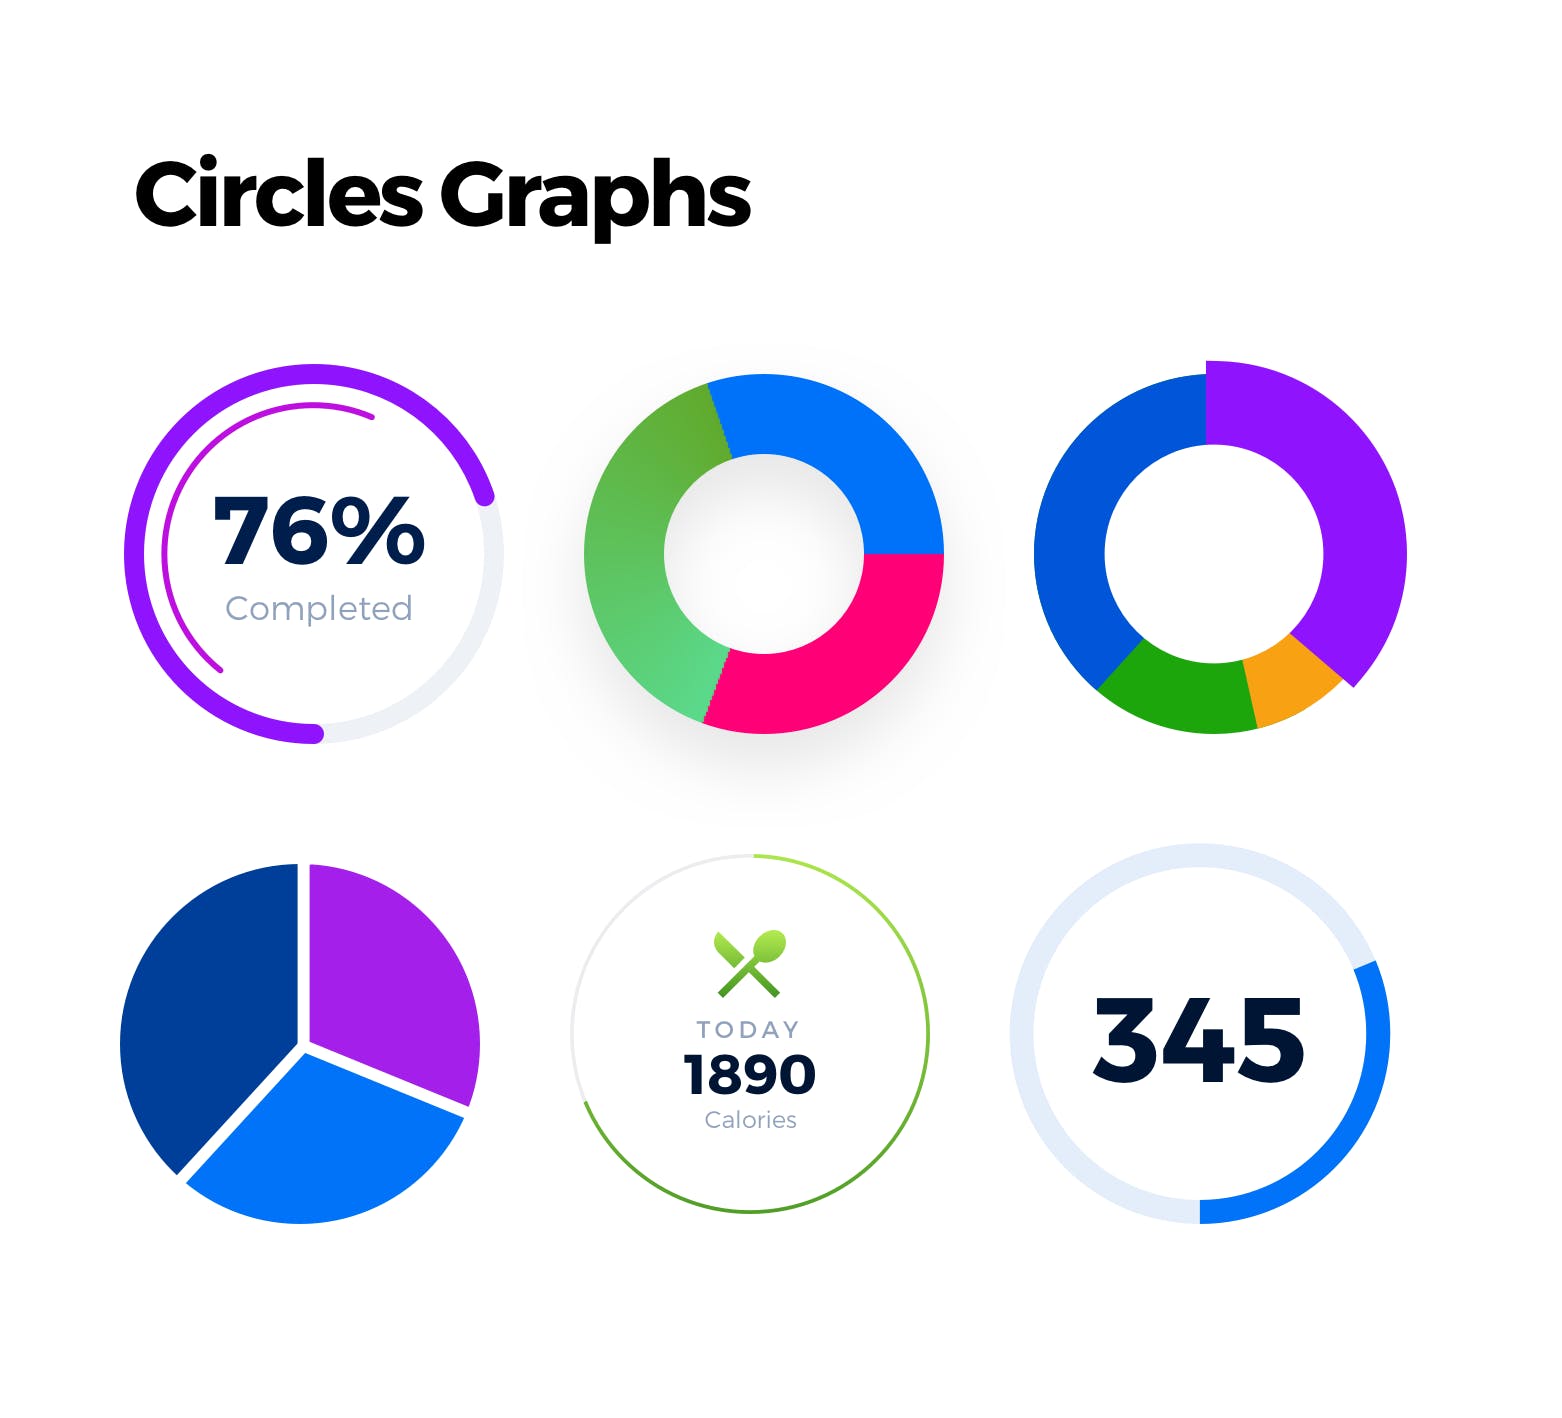 15+网站后台管理数据统计图表设计素材 15+ Dashboard Charts & Graphs Items插图(1)